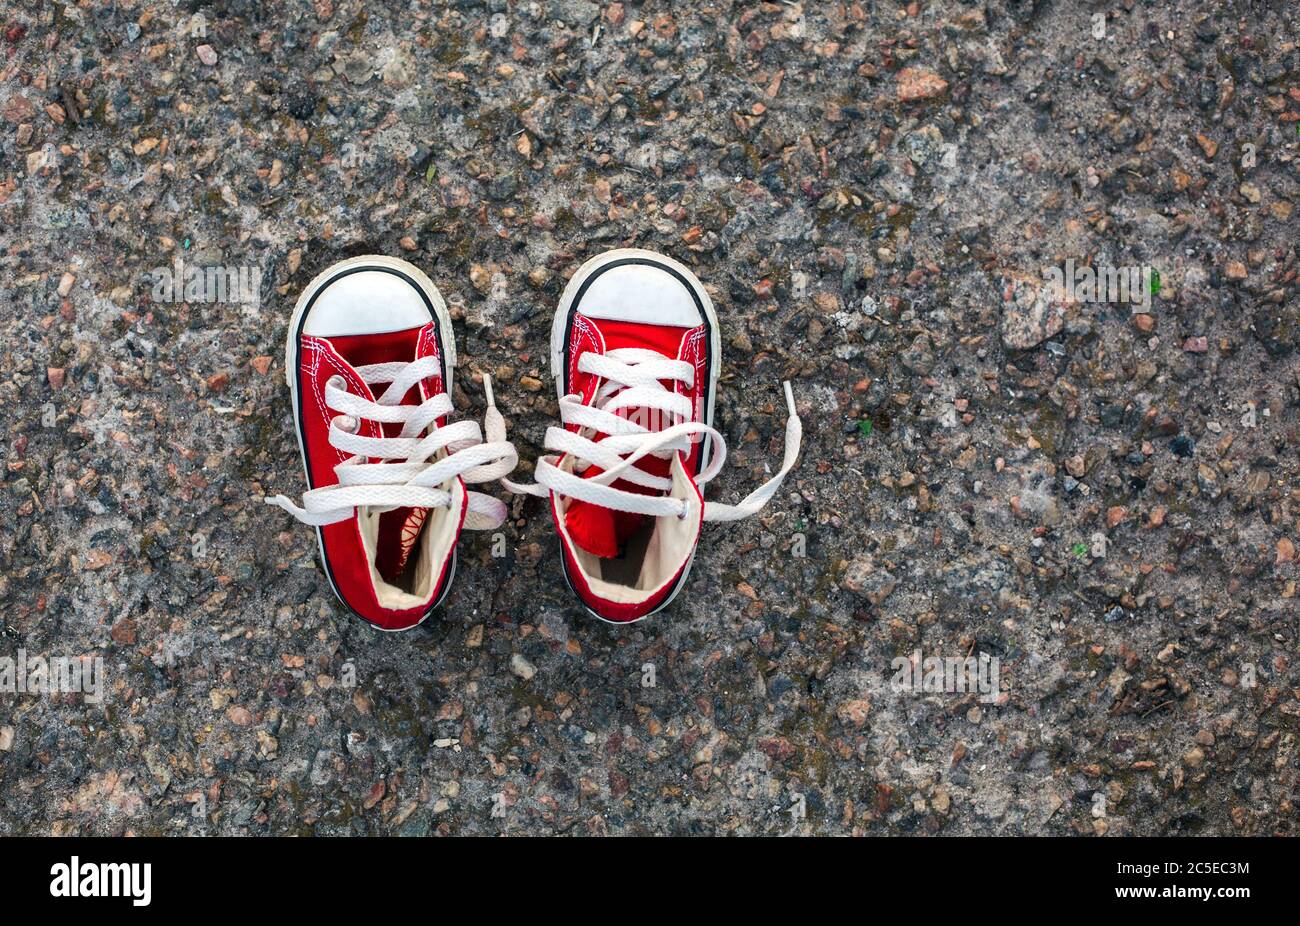 Scarpe da ginnastica rosse per bambini su fondo asfaltato Foto Stock